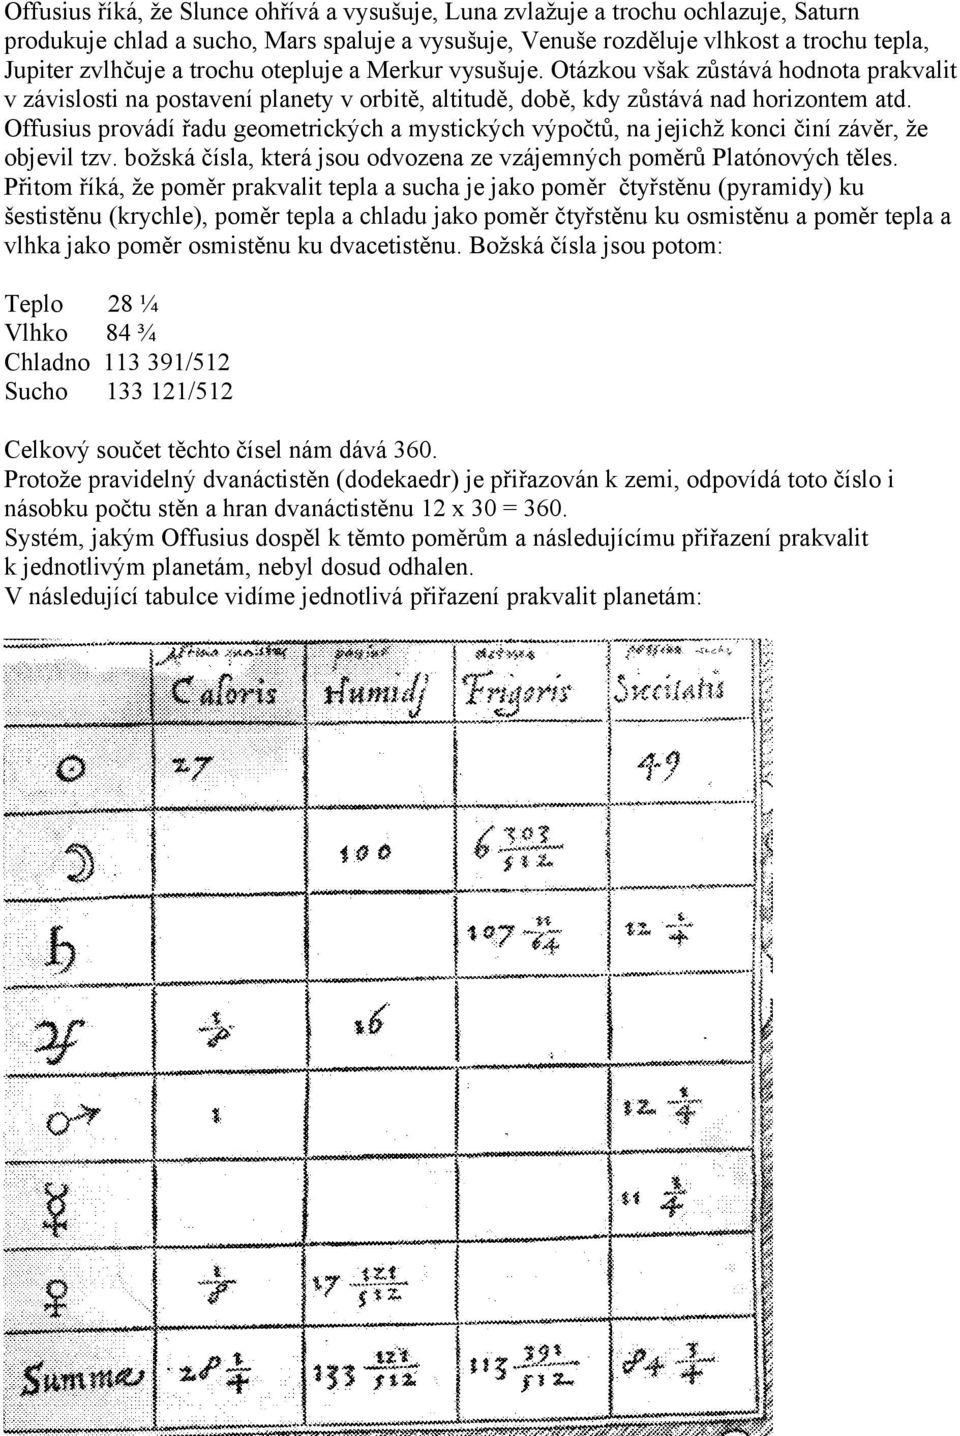 Offusius provádí řadu geometrických a mystických výpočtů, na jejichž konci činí závěr, že objevil tzv. božská čísla, která jsou odvozena ze vzájemných poměrů Platónových těles.